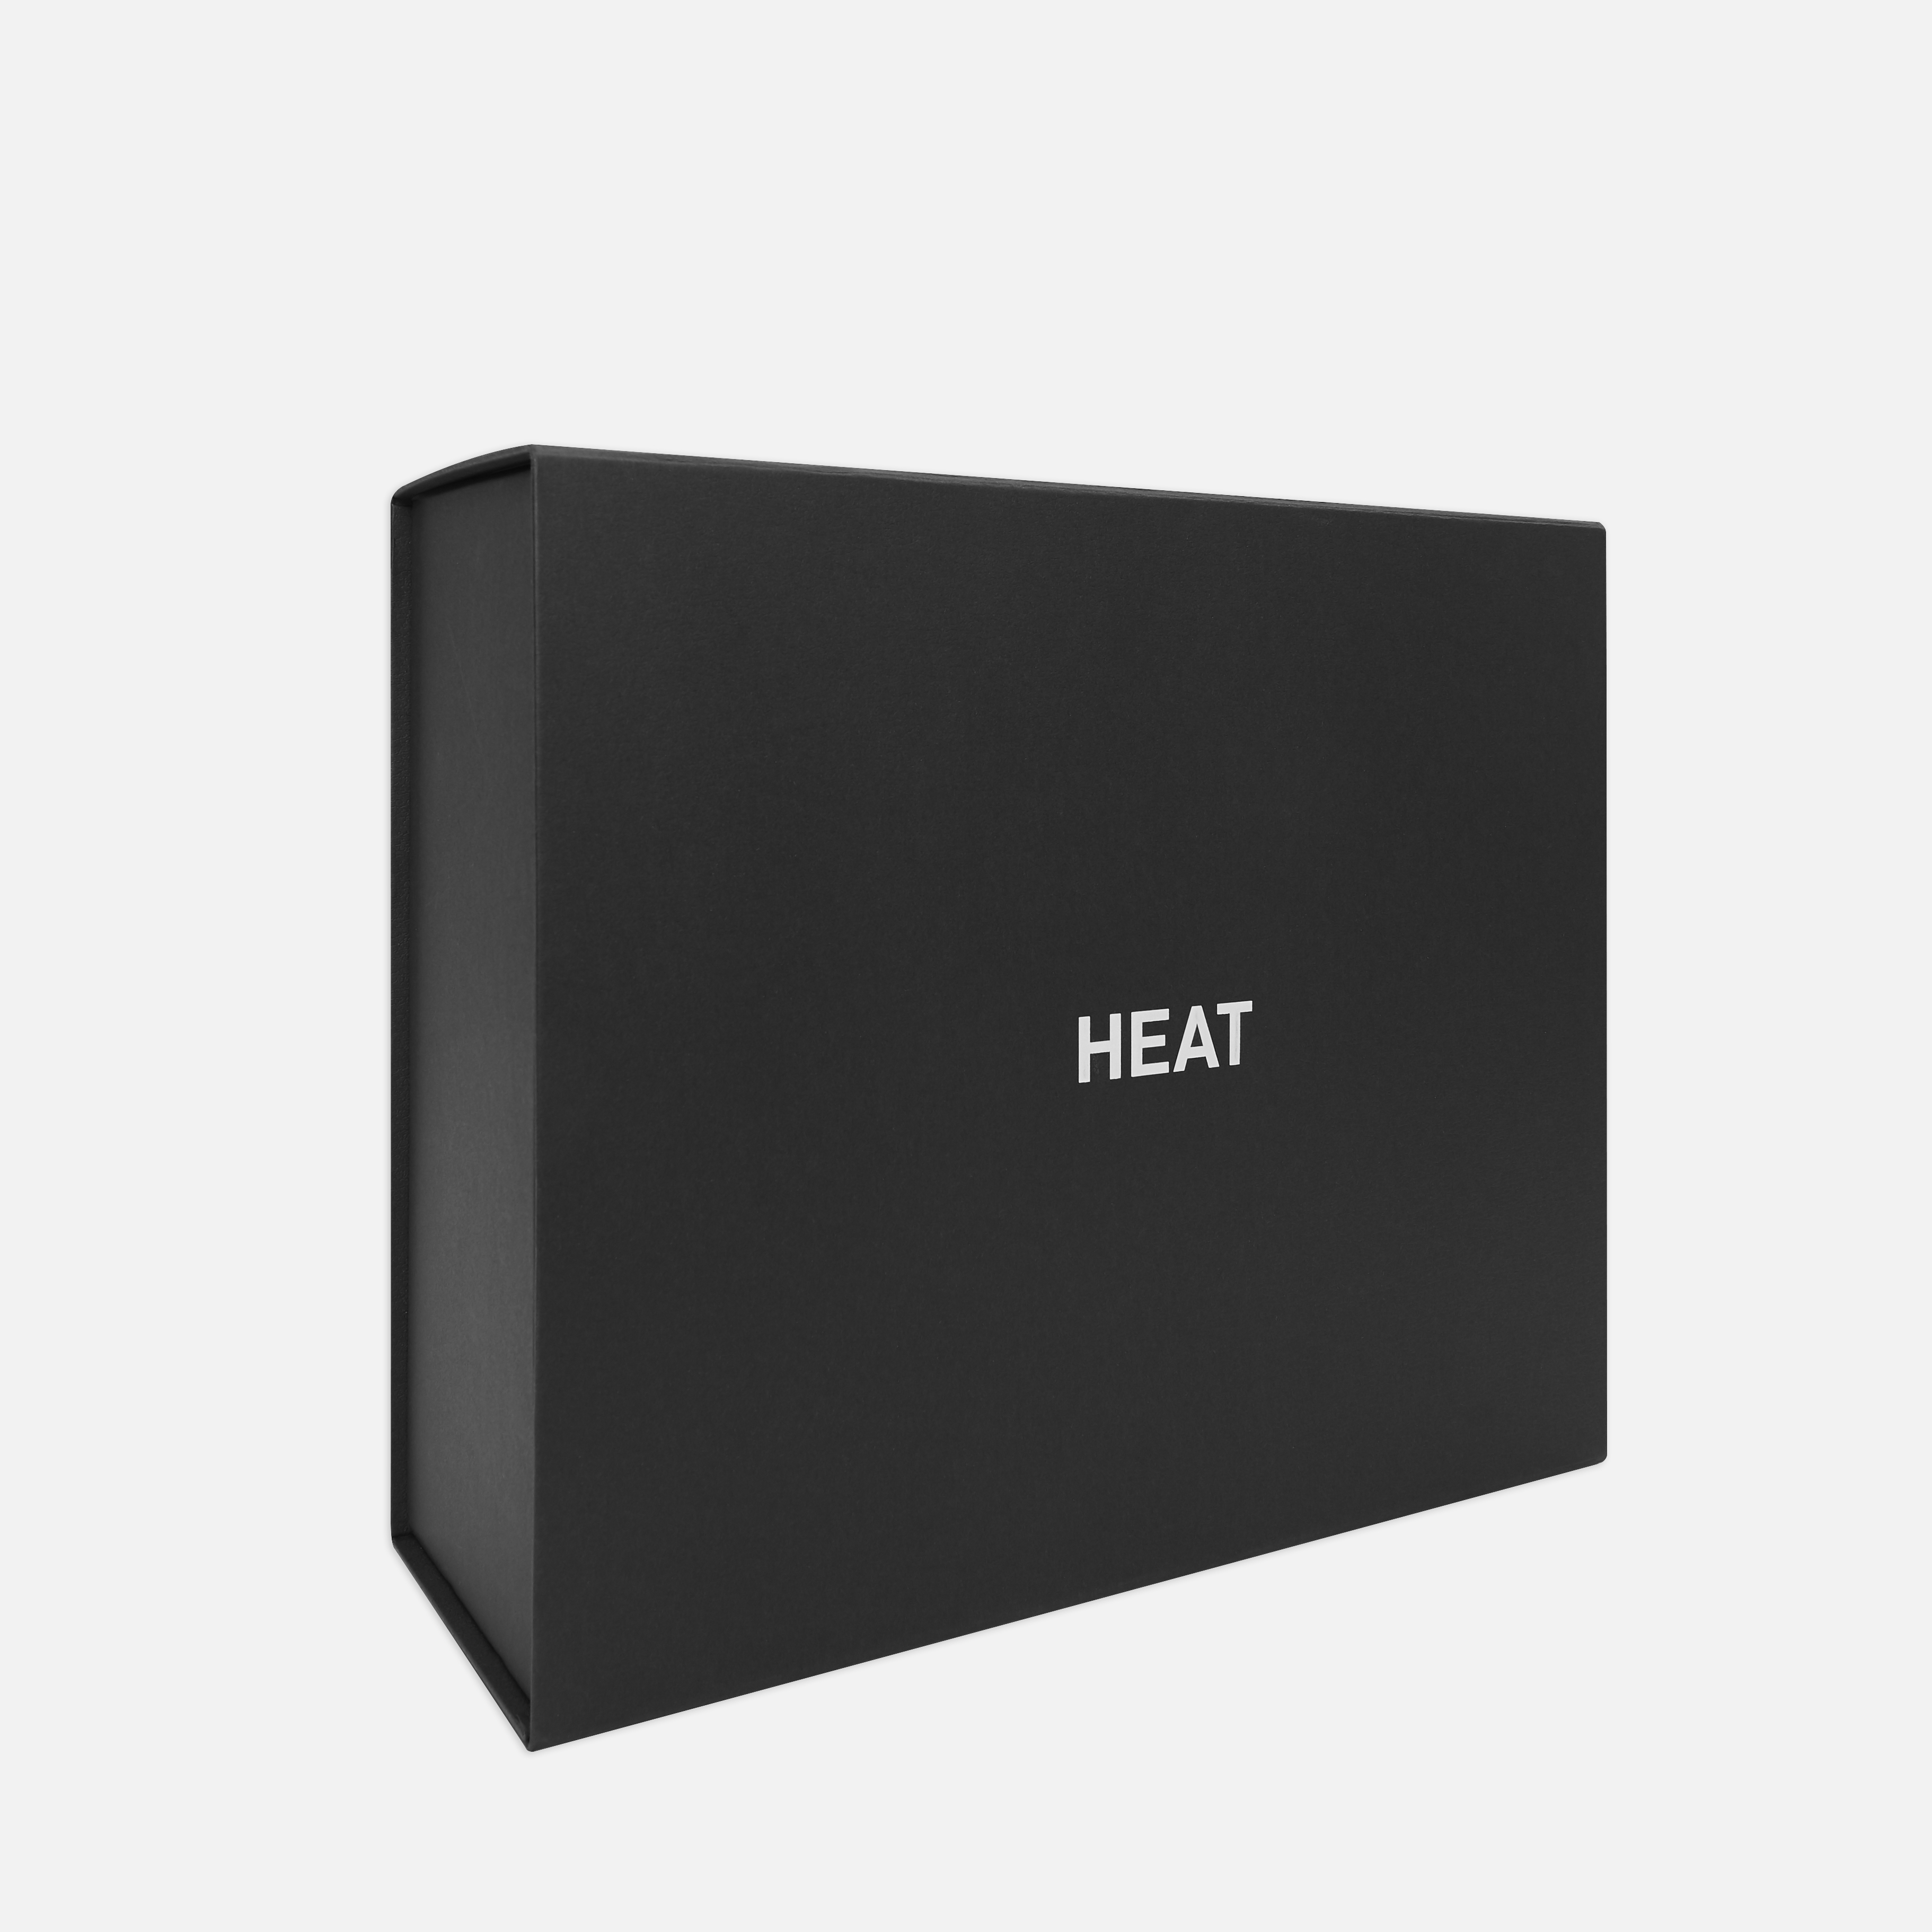 Heat's mystery box